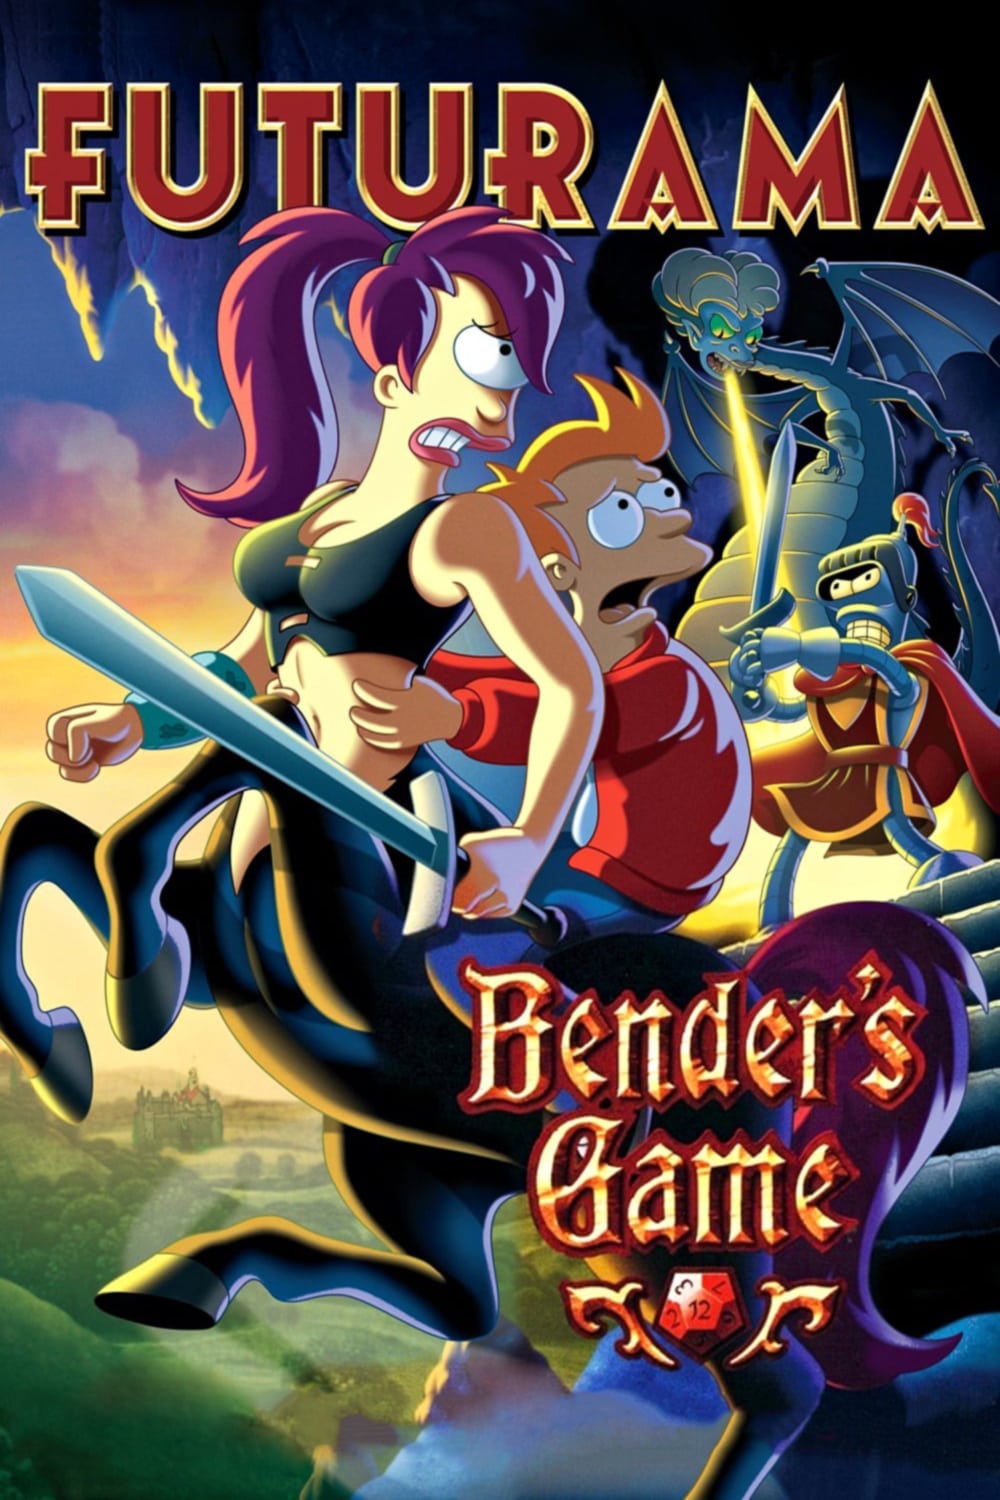 Caratula de FUTURAMA: BENDER S GAME (Futurama: El juego de Bender) 